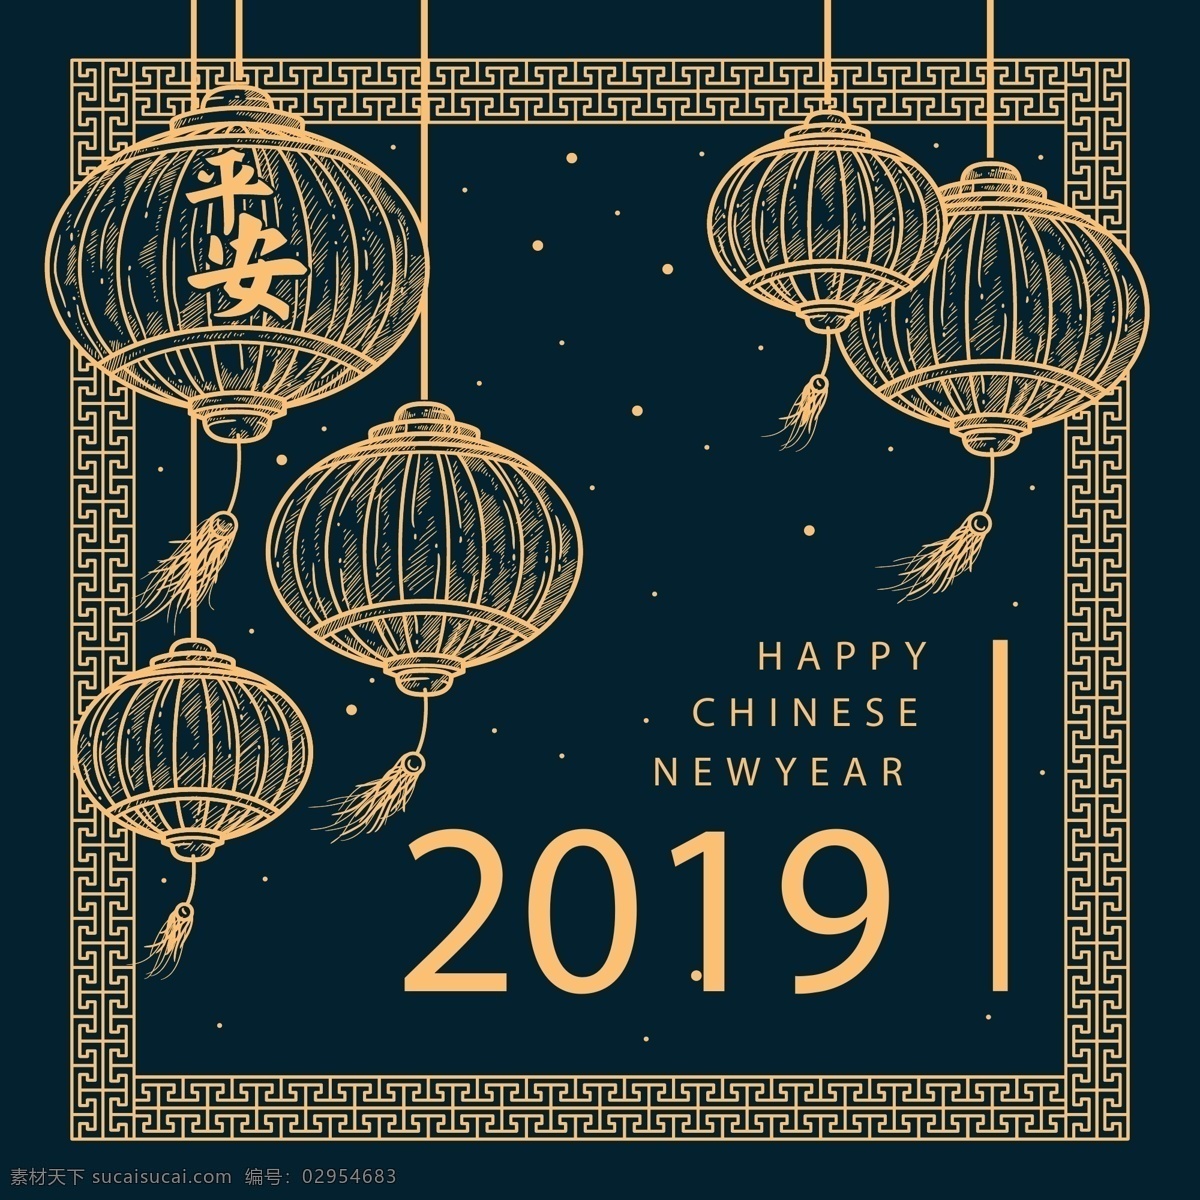 手绘灯笼背景 手绘灯笼 背景 手绘 灯笼 矢量 传统 过年 新年 中国年 2019